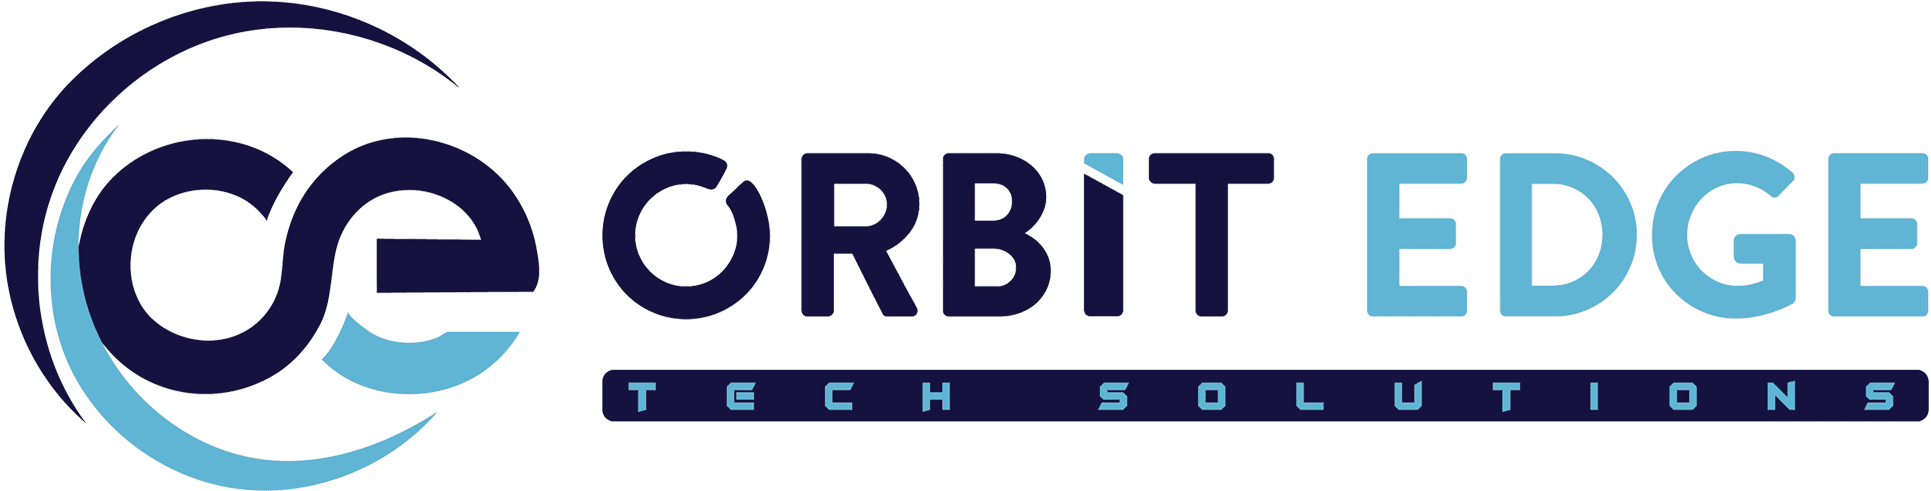 Orbit Edgetech Solutions'